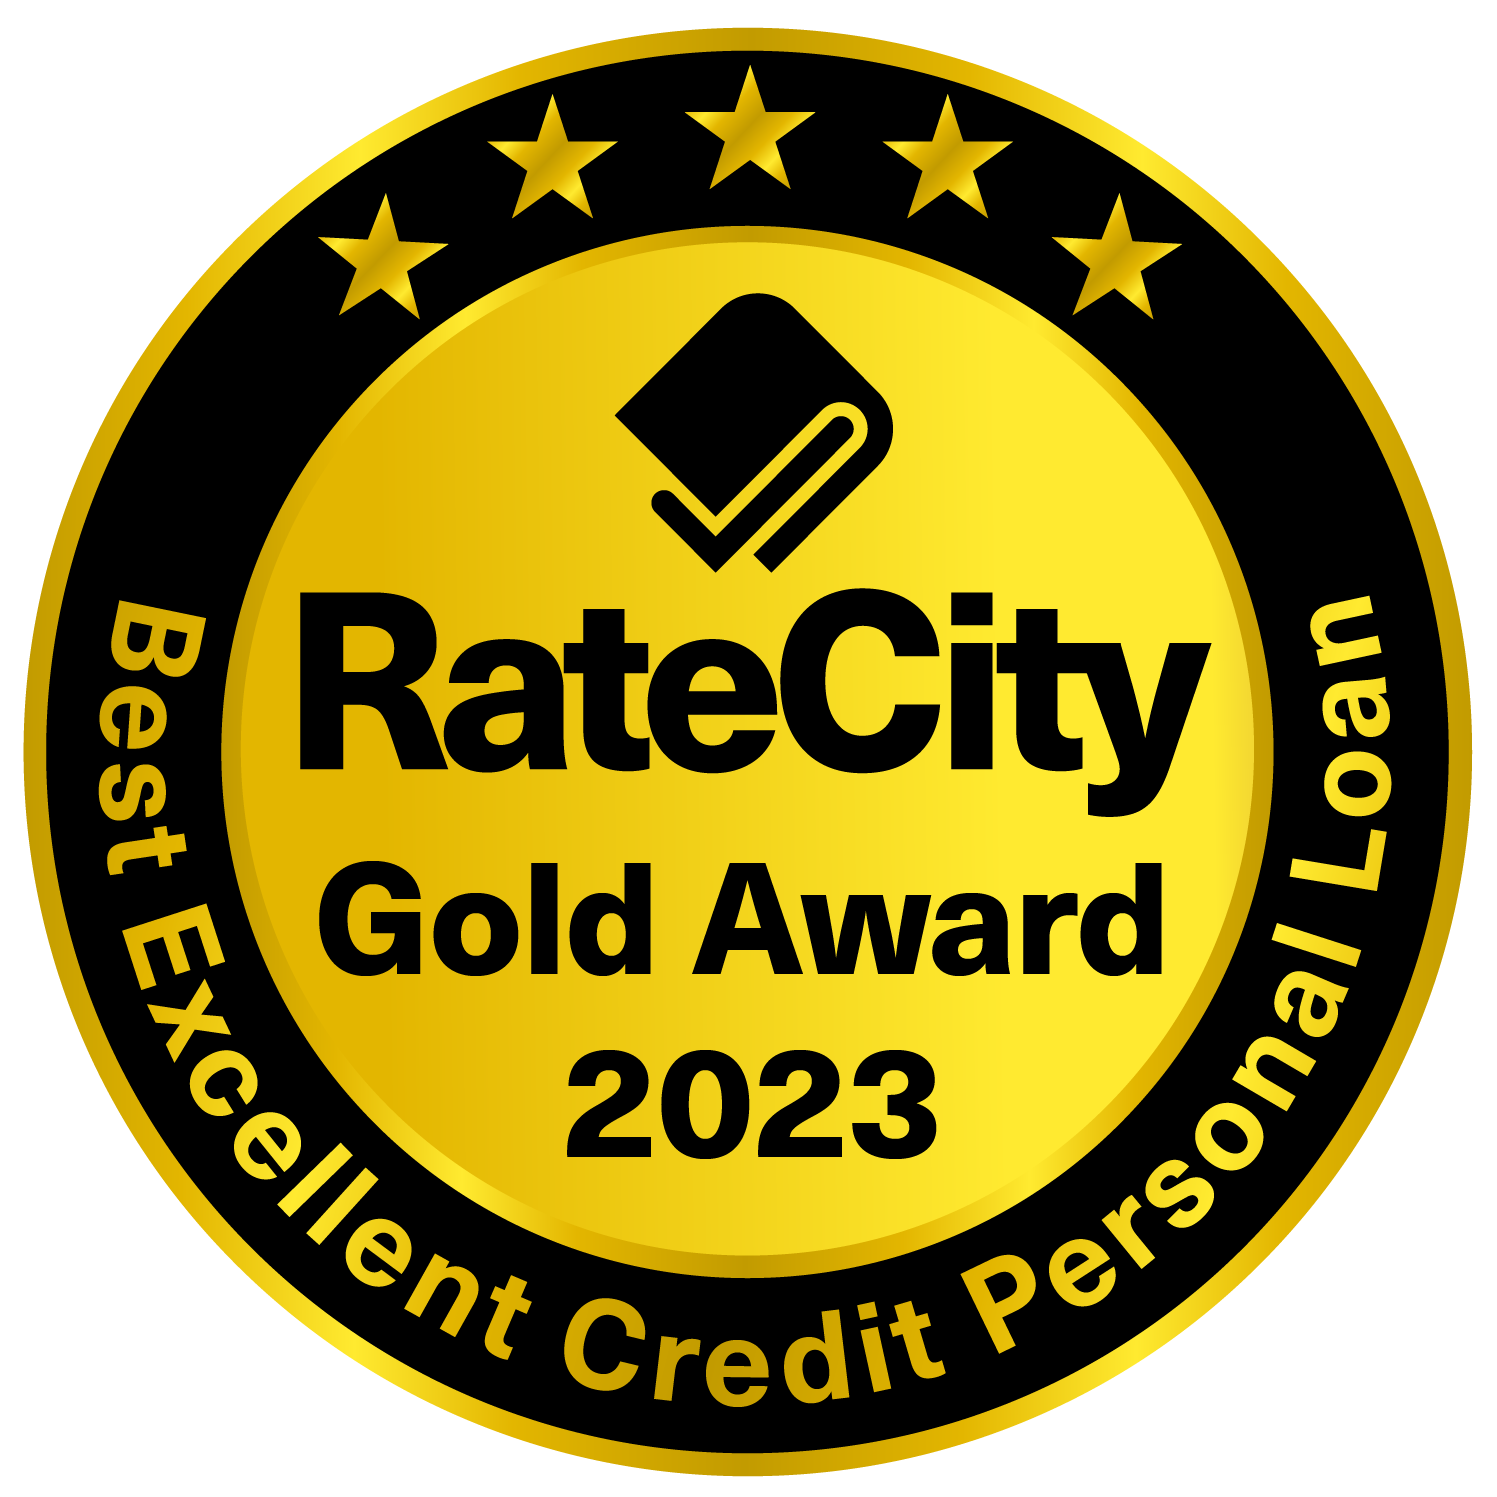 RateCity Gold Award - Winner - 2023